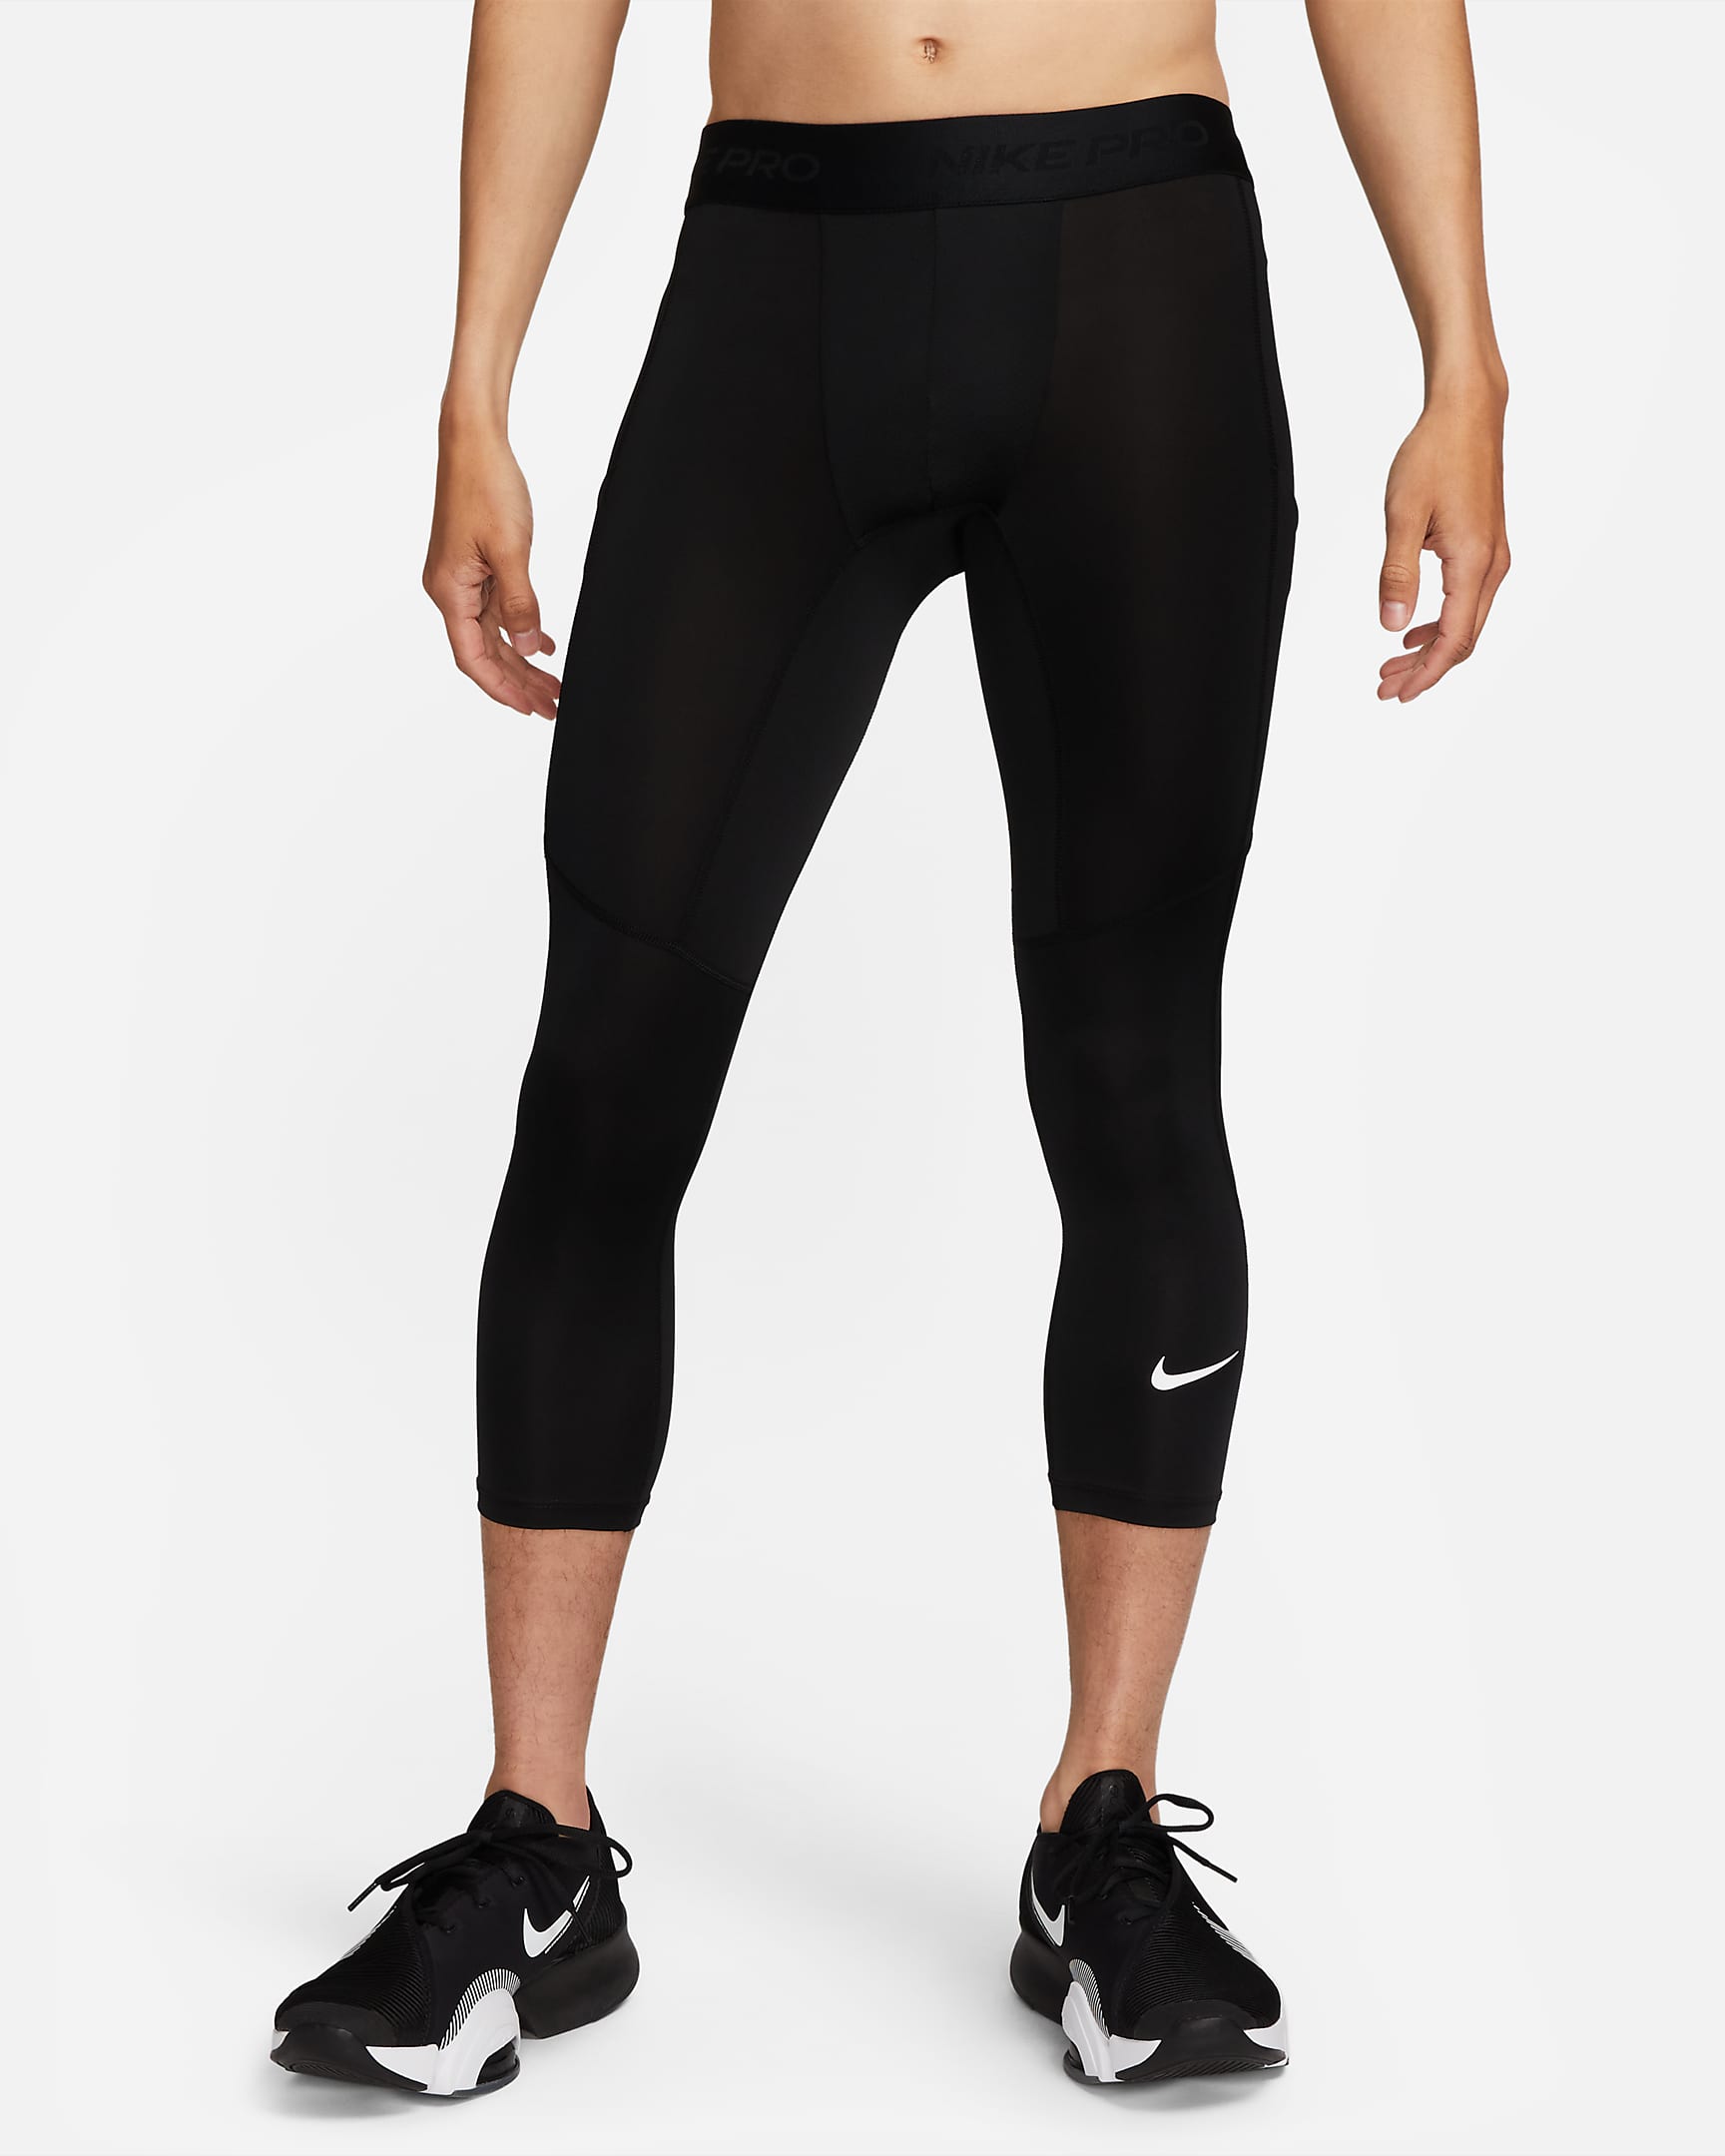 Nike Pro Men's Dri-FIT 3/4-Length Fitness Tights. Nike SG